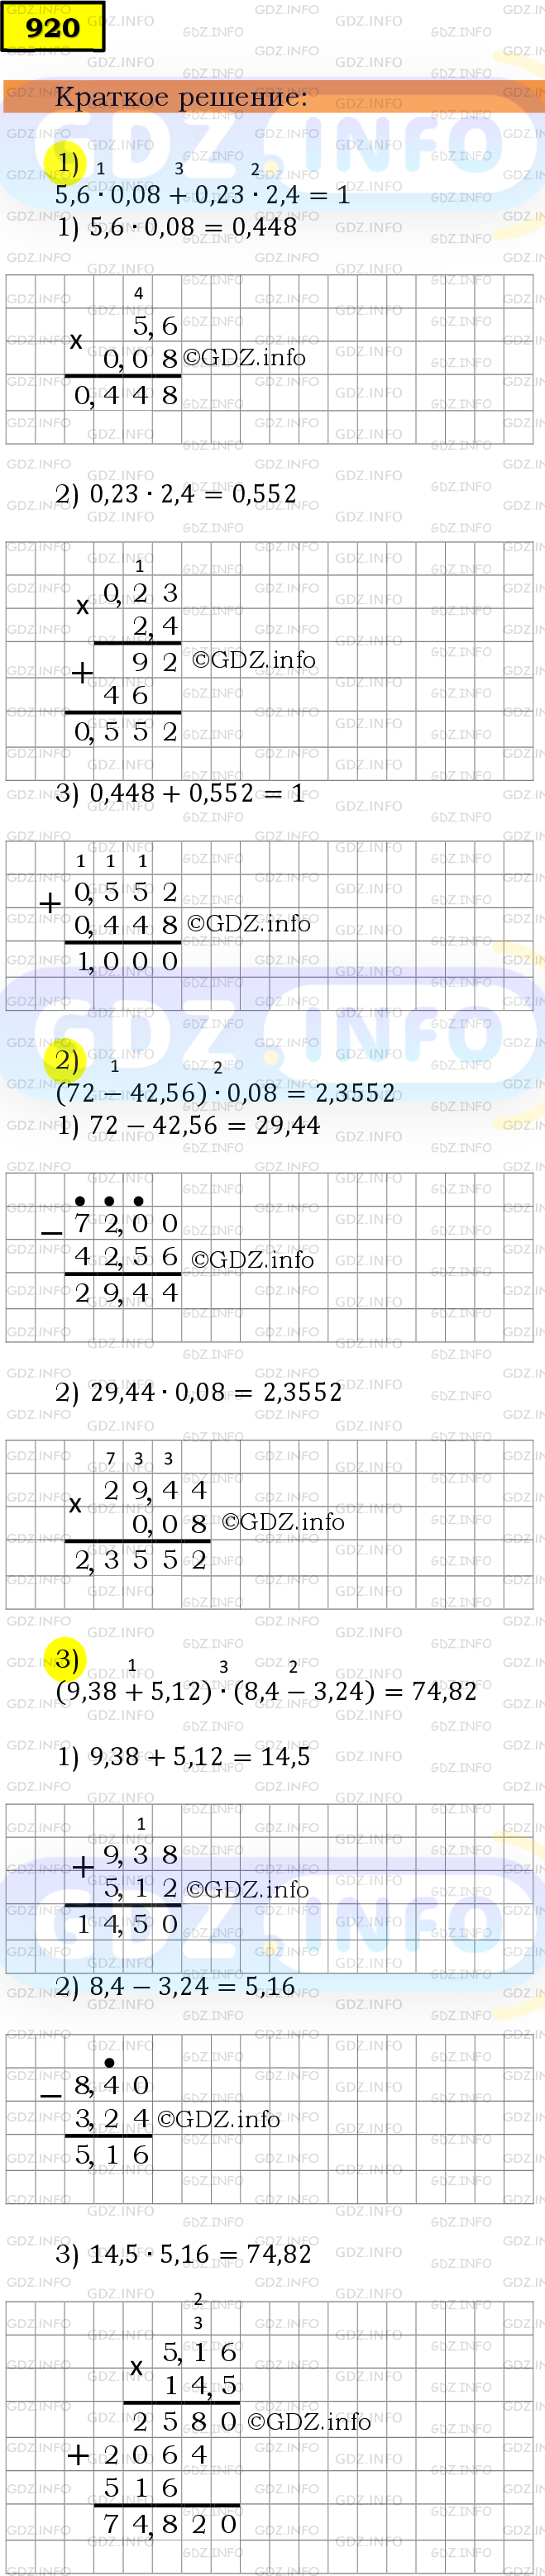 Фото решения 6: Номер №920 из ГДЗ по Математике 5 класс: Мерзляк А.Г. г.